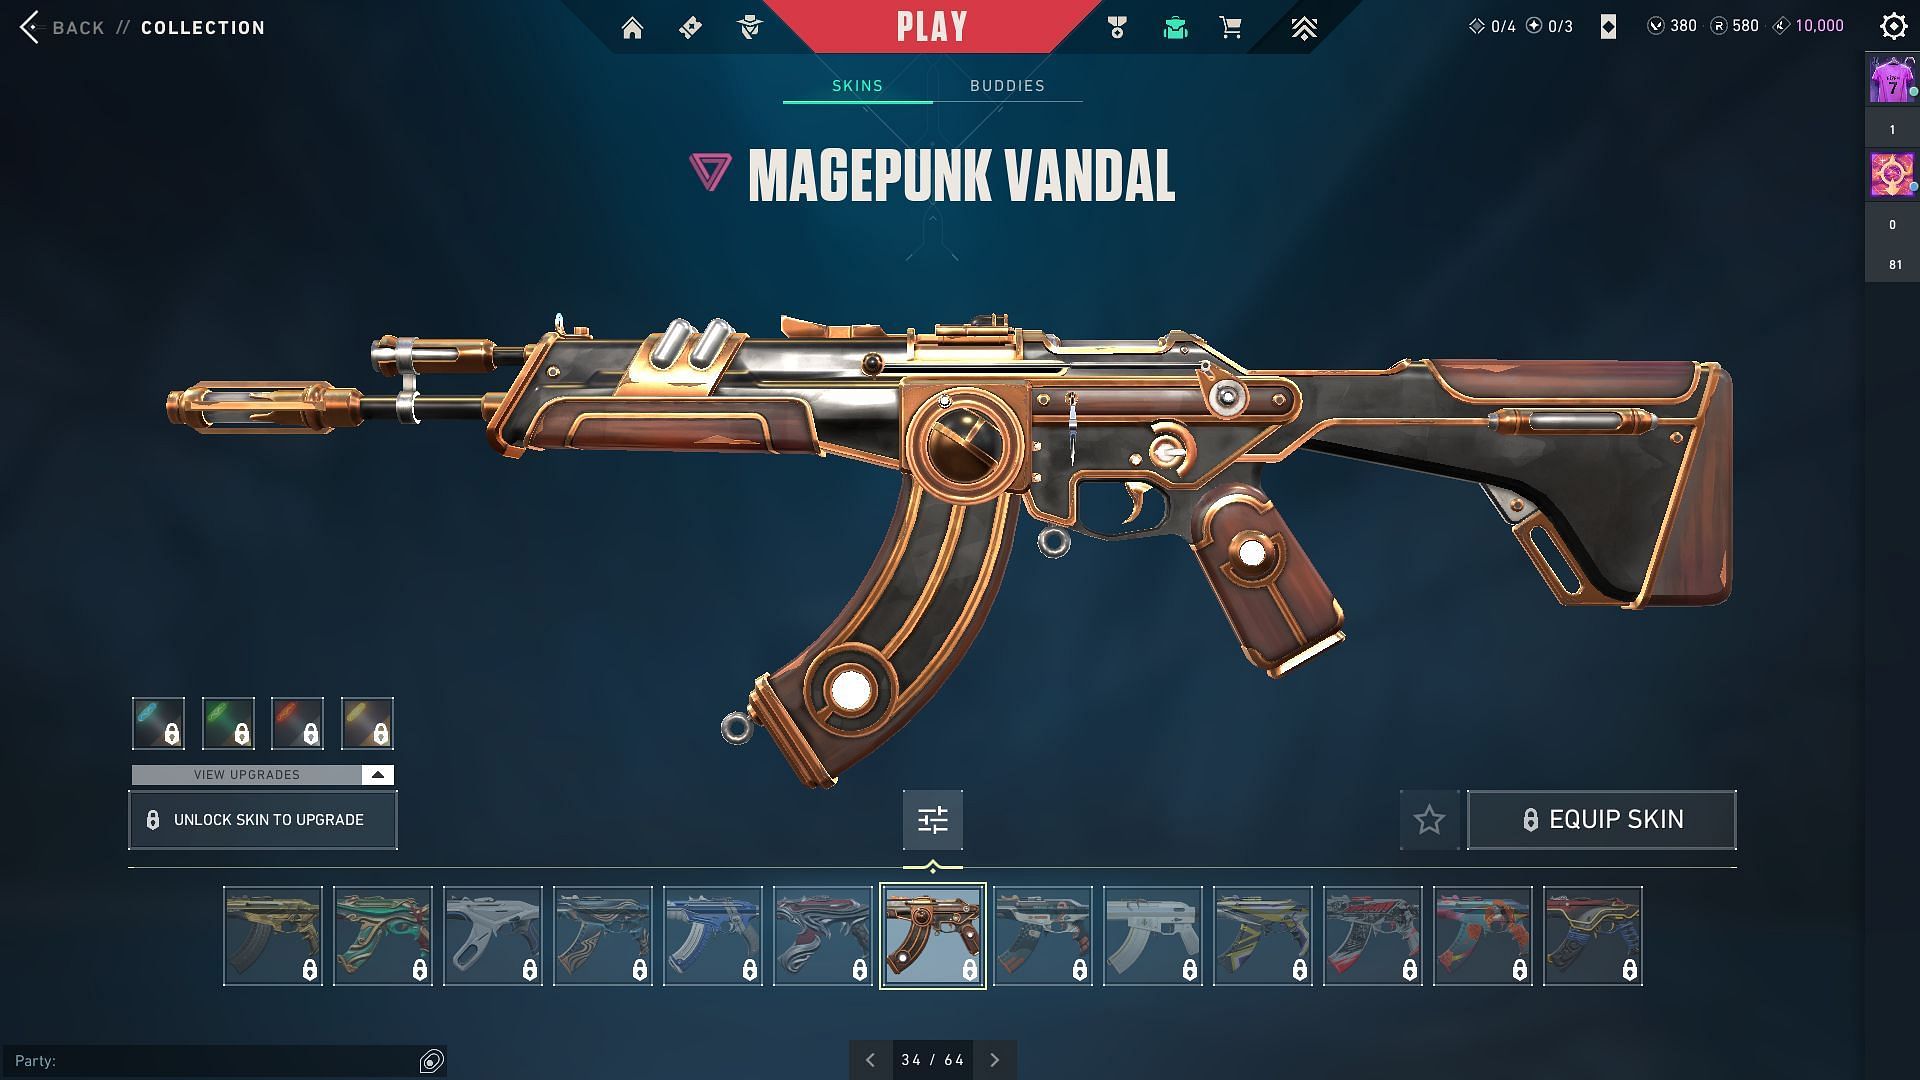 Magepunk Vandal (Image via Riot Games)